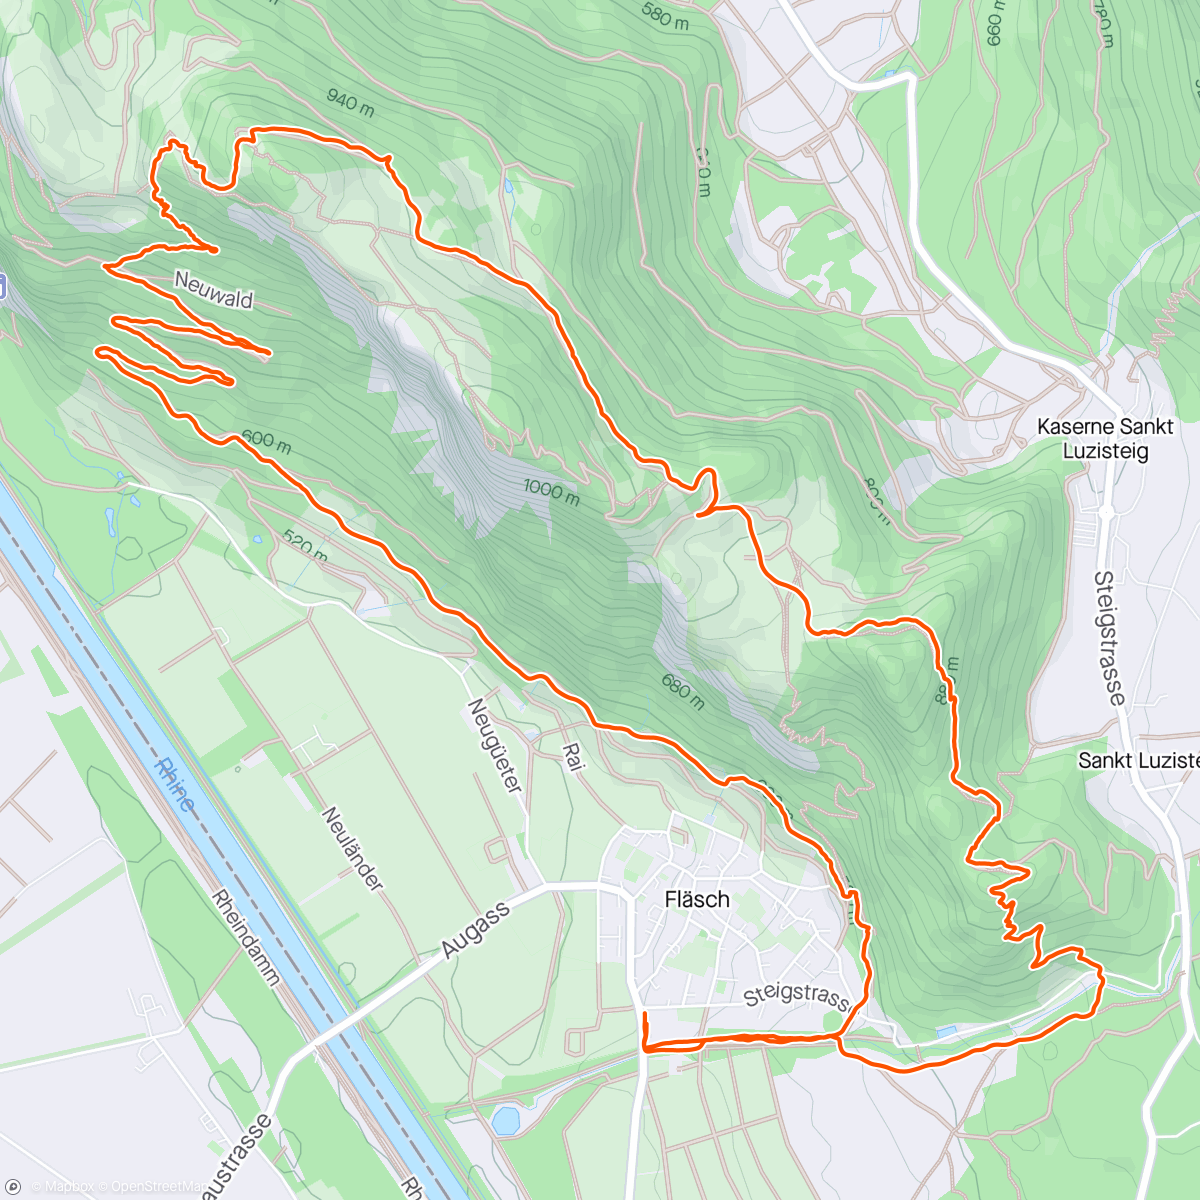 「trail-maniacs - Trailtreff Fläsch」活動的地圖